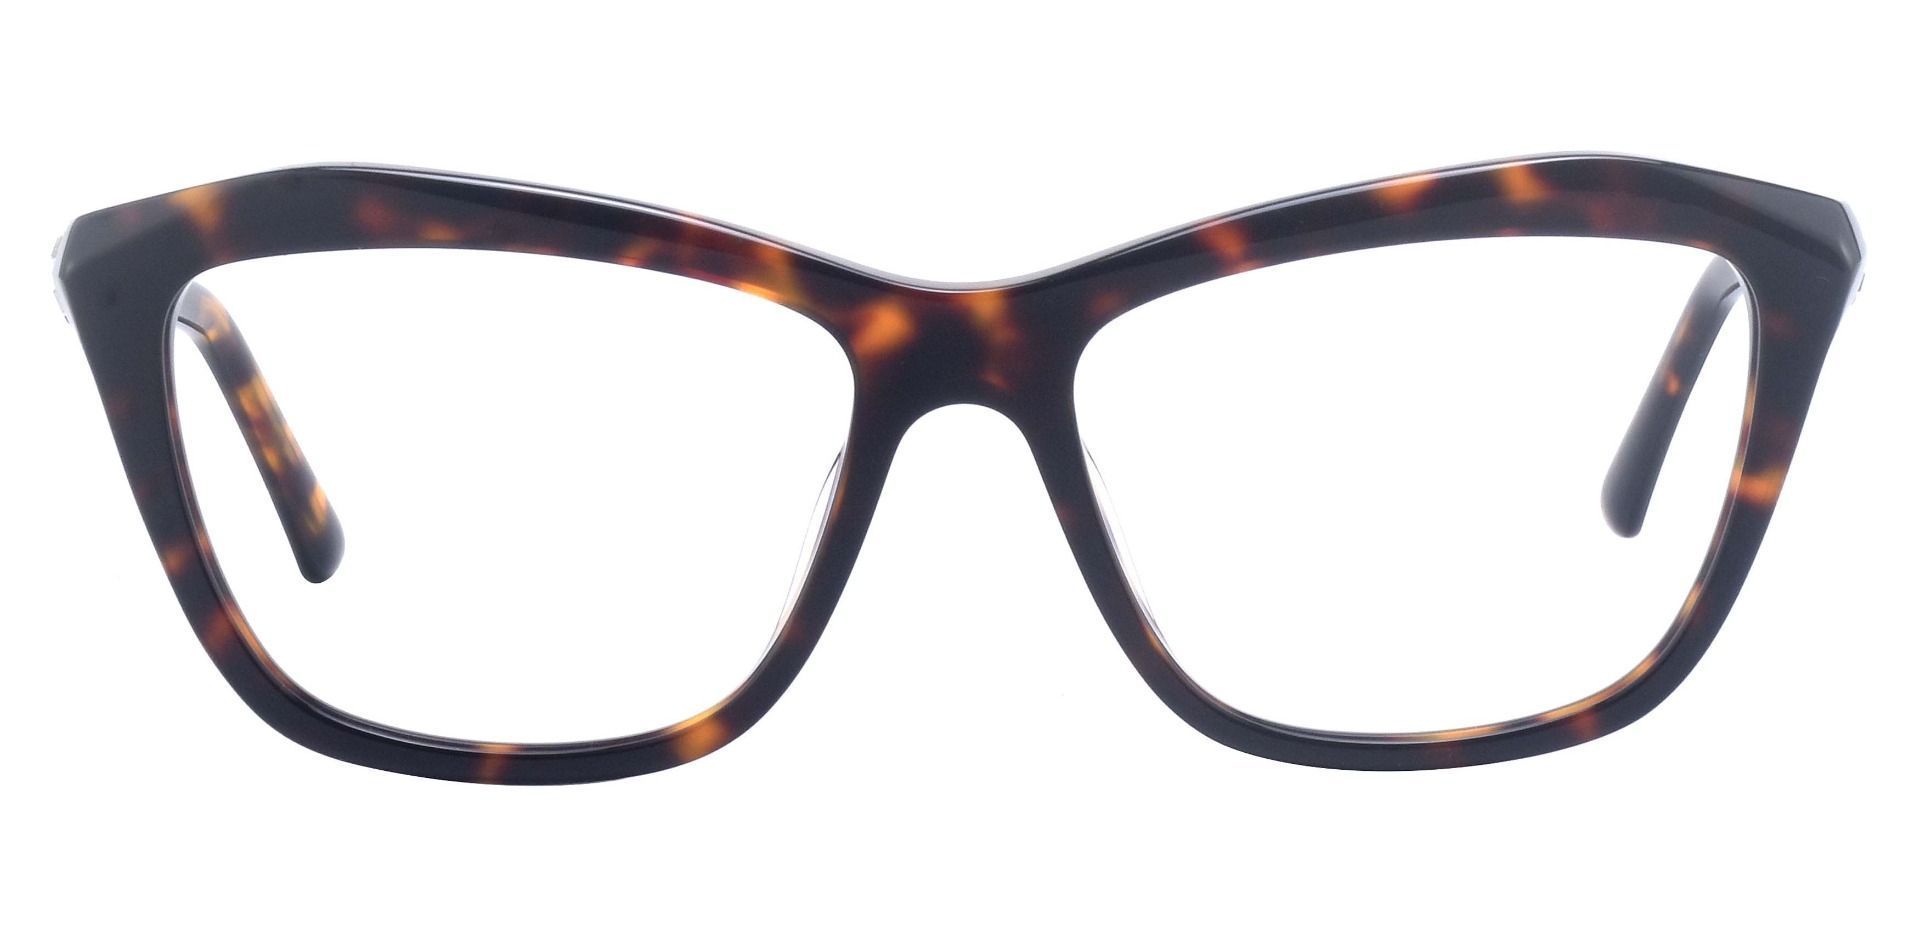 Bellaire Cat Eye Prescription Glasses - Tortoise | Women's Eyeglasses ...